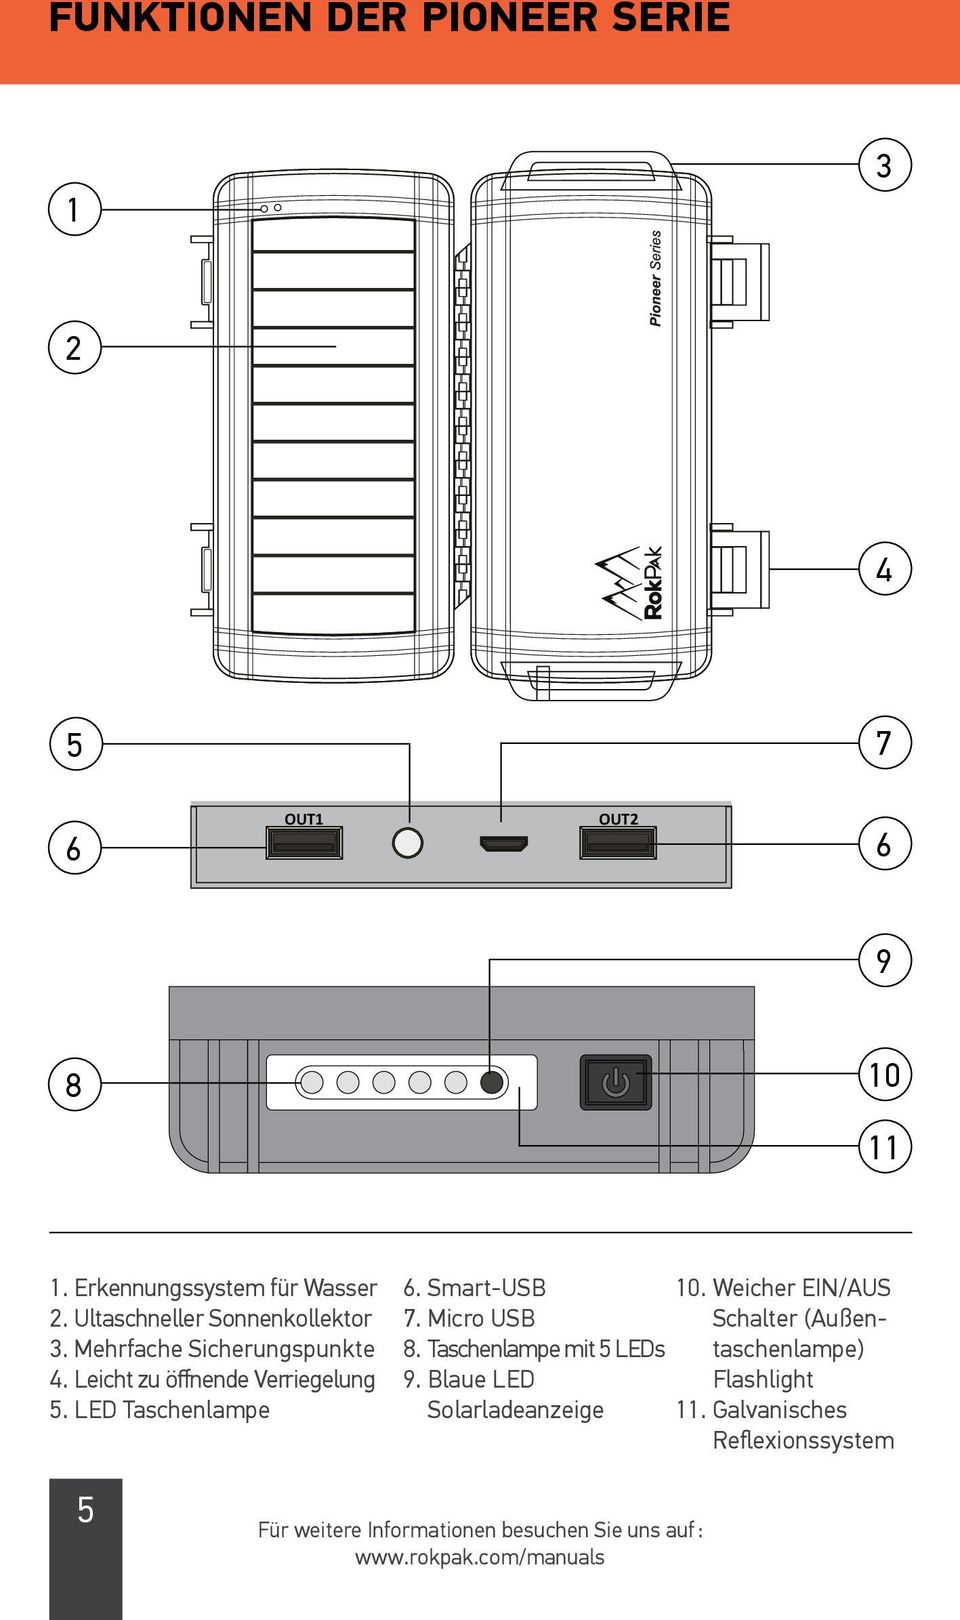 LED Taschenlampe 6. Smart-USB 10. Weicher EIN/AUS 7. Micro USB Schalter (Außentaschenlampe) 8.